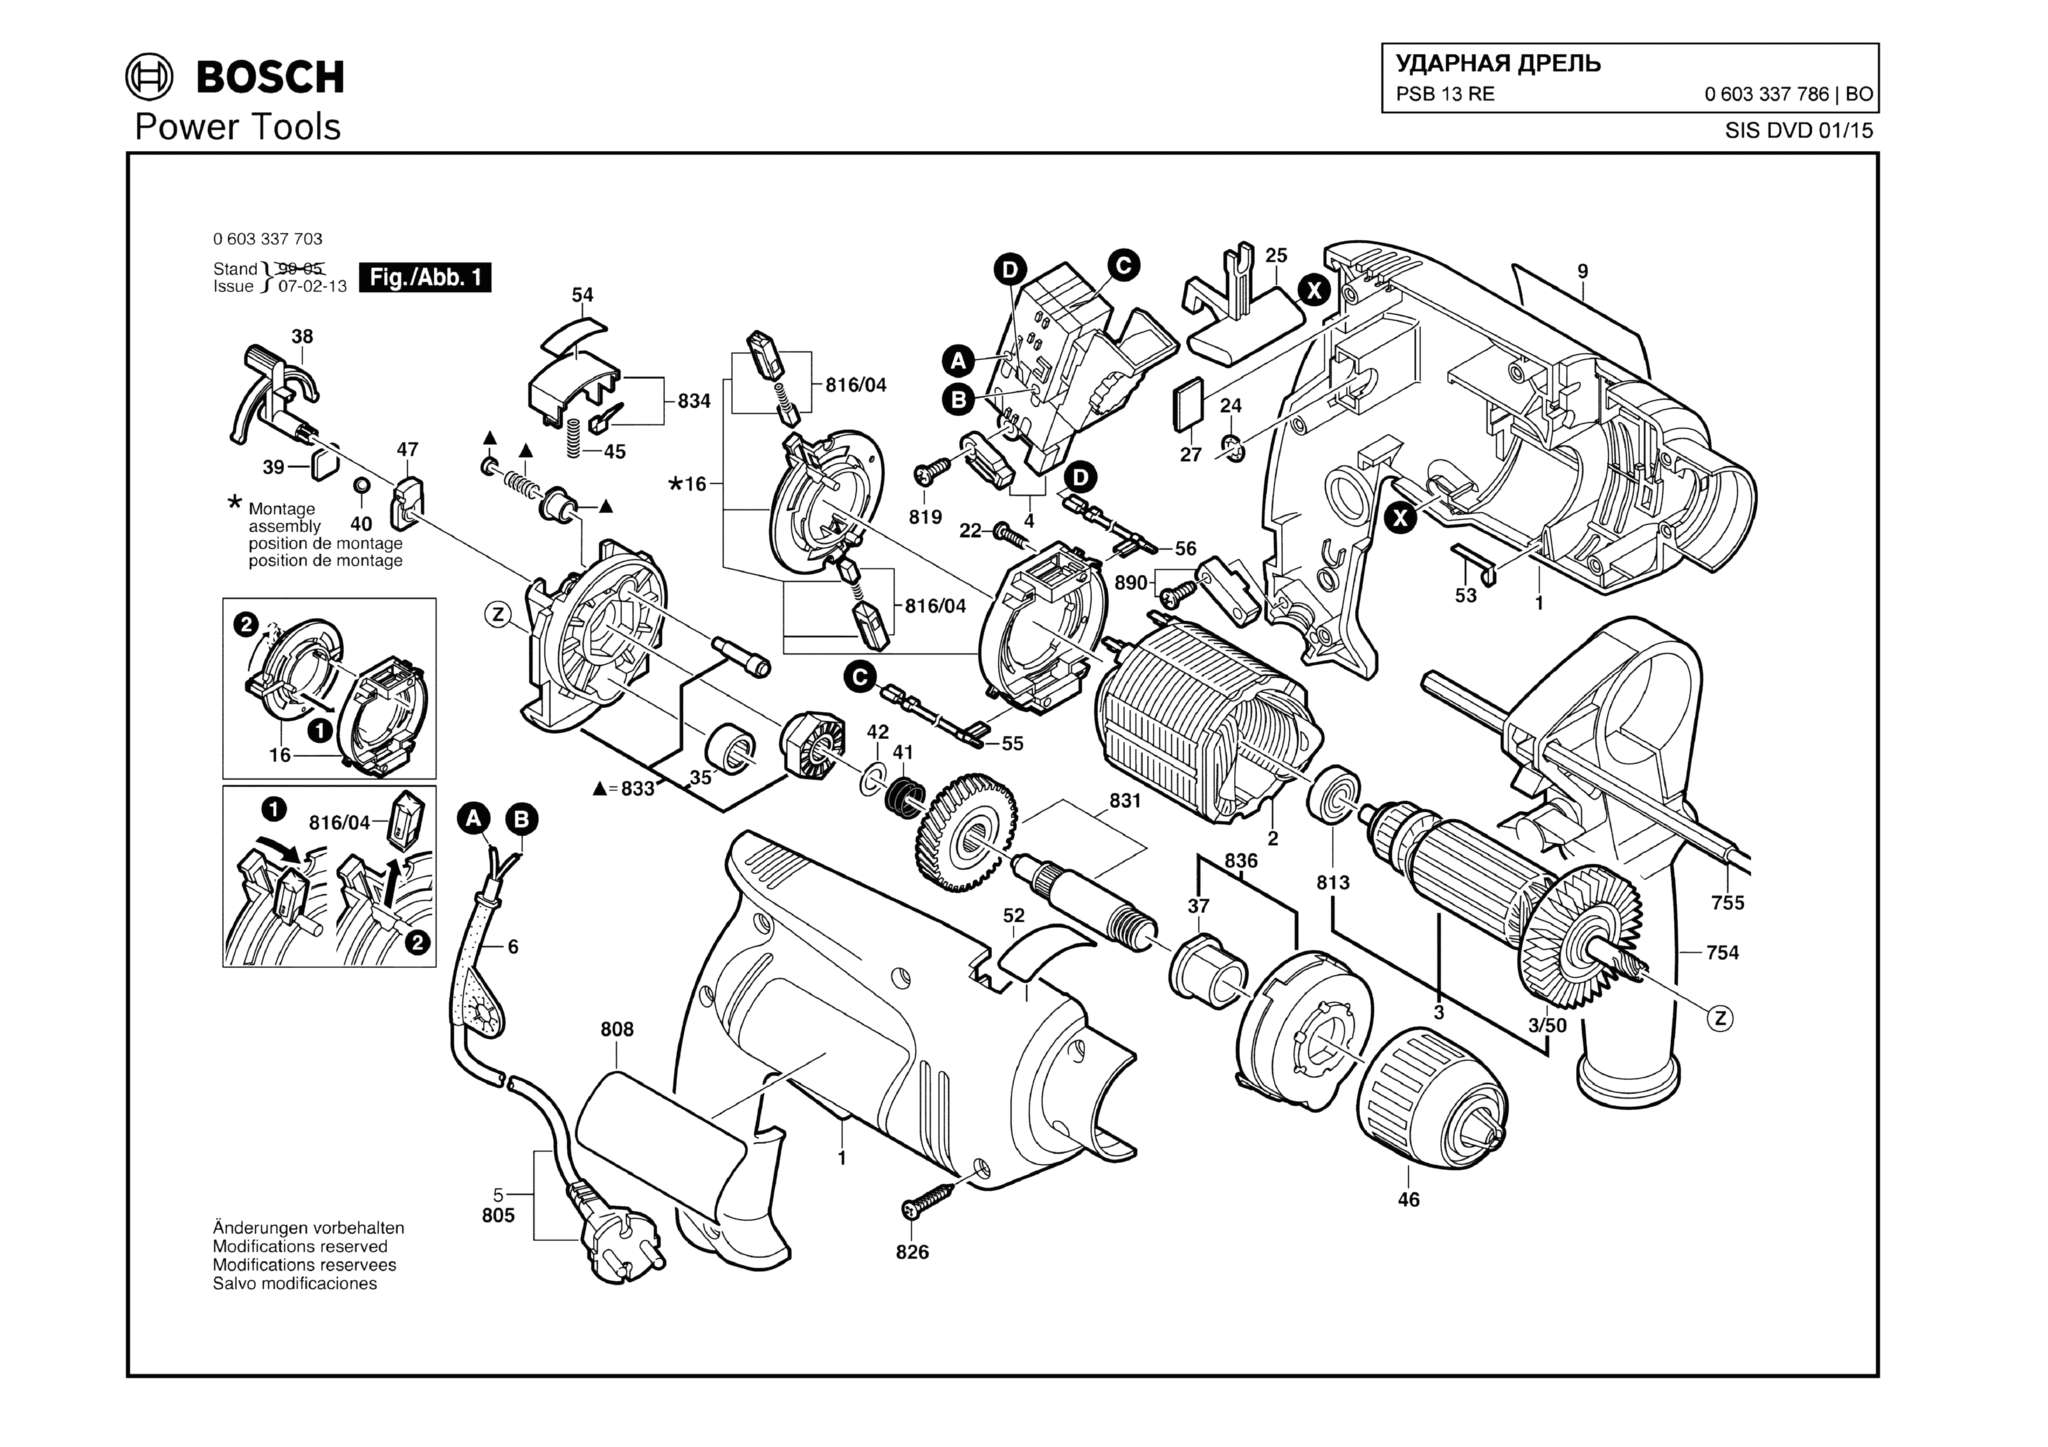 Запчасти, схема и деталировка Bosch PSB 13 RE (ТИП 0603337786)